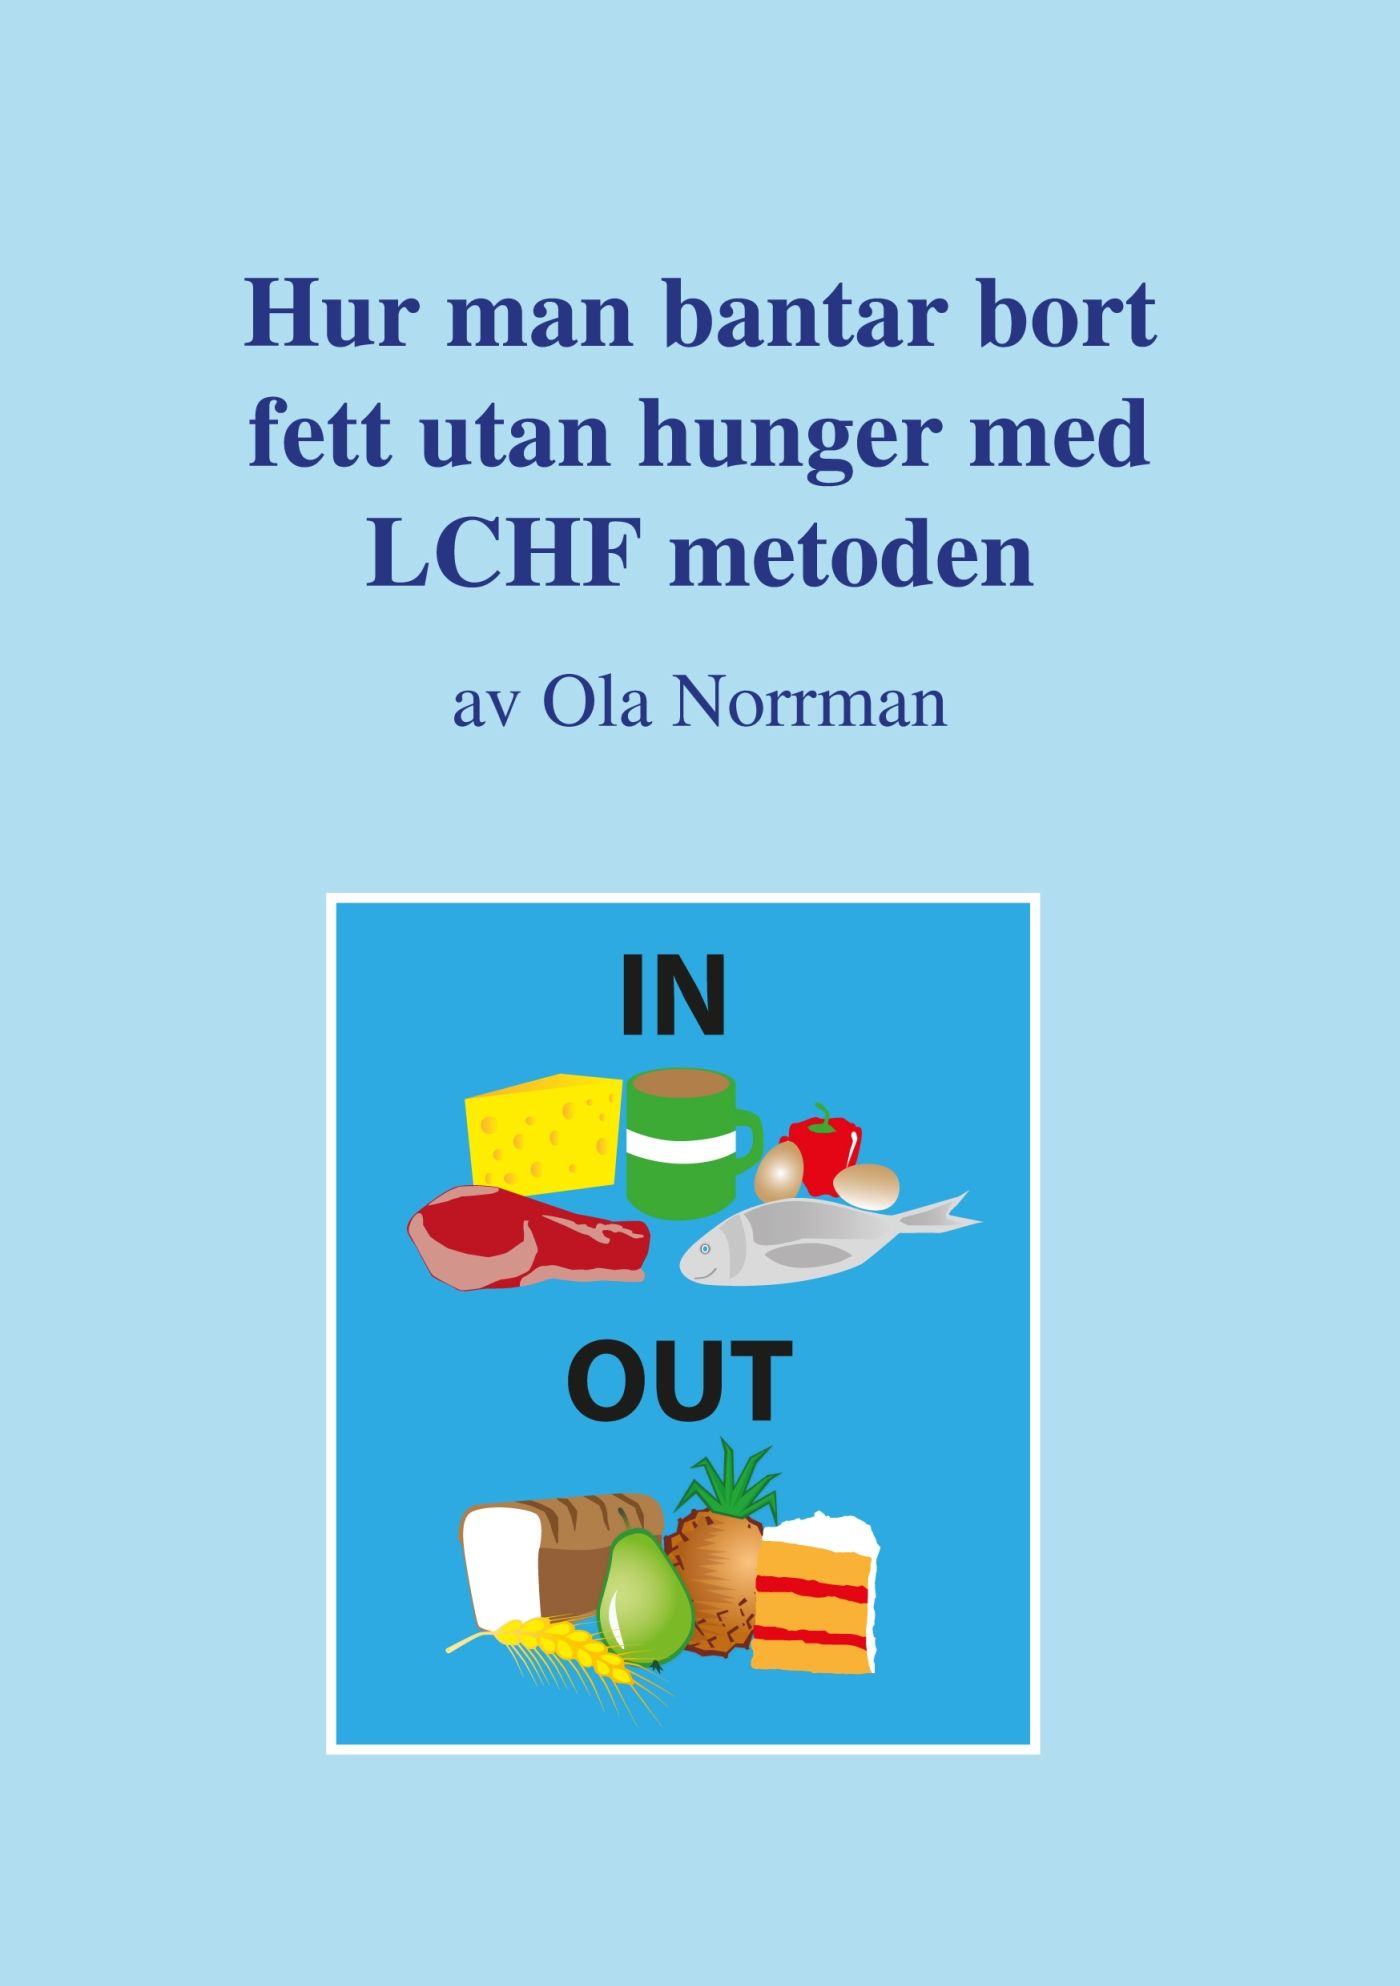 Hur man bantar bort fett utan hunger med LCHF metoden, eBook by Ola Norrman